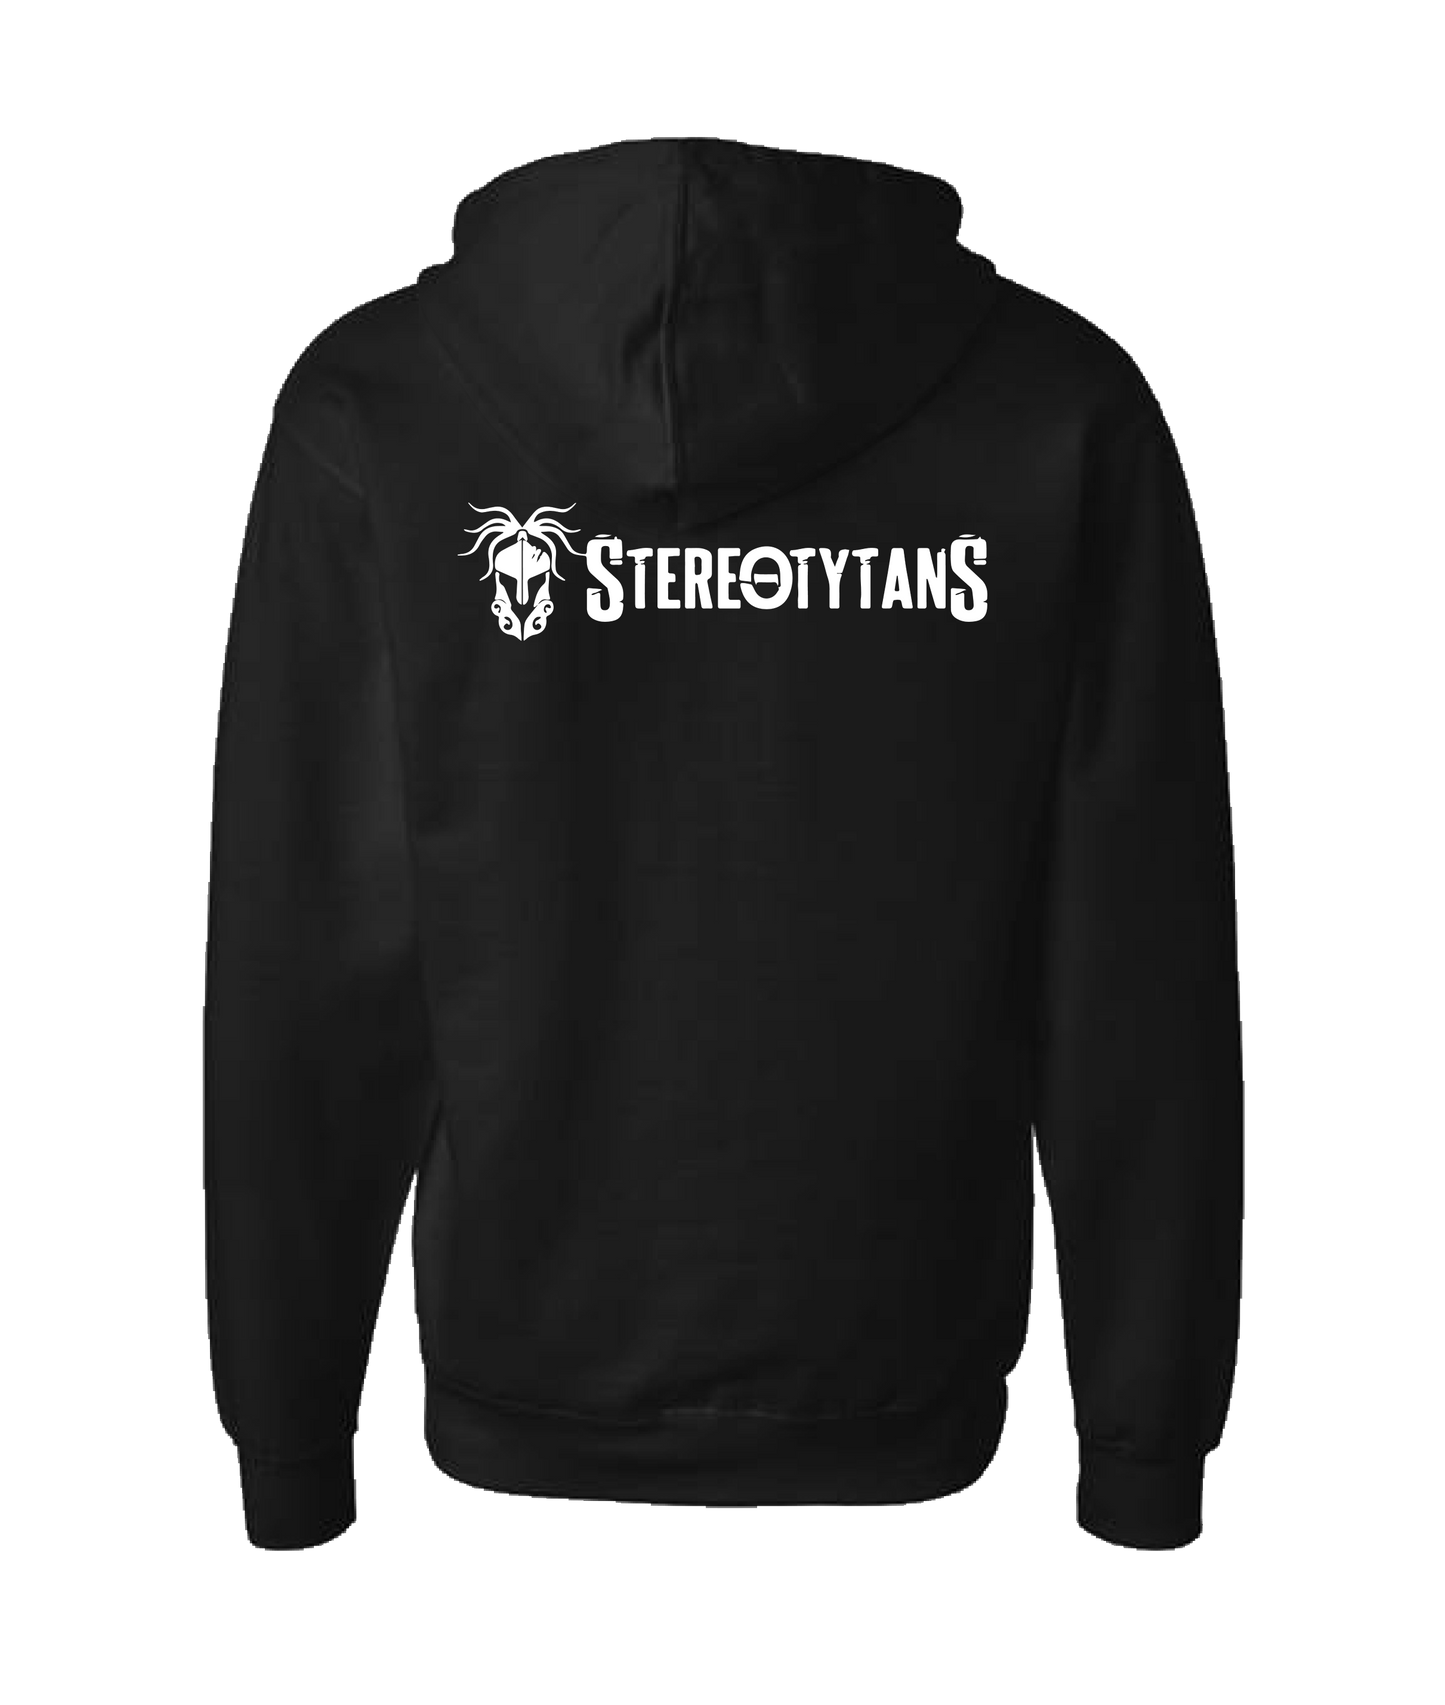 Stereotytans - Horizontal Logo - Black Zip Up Hoodie